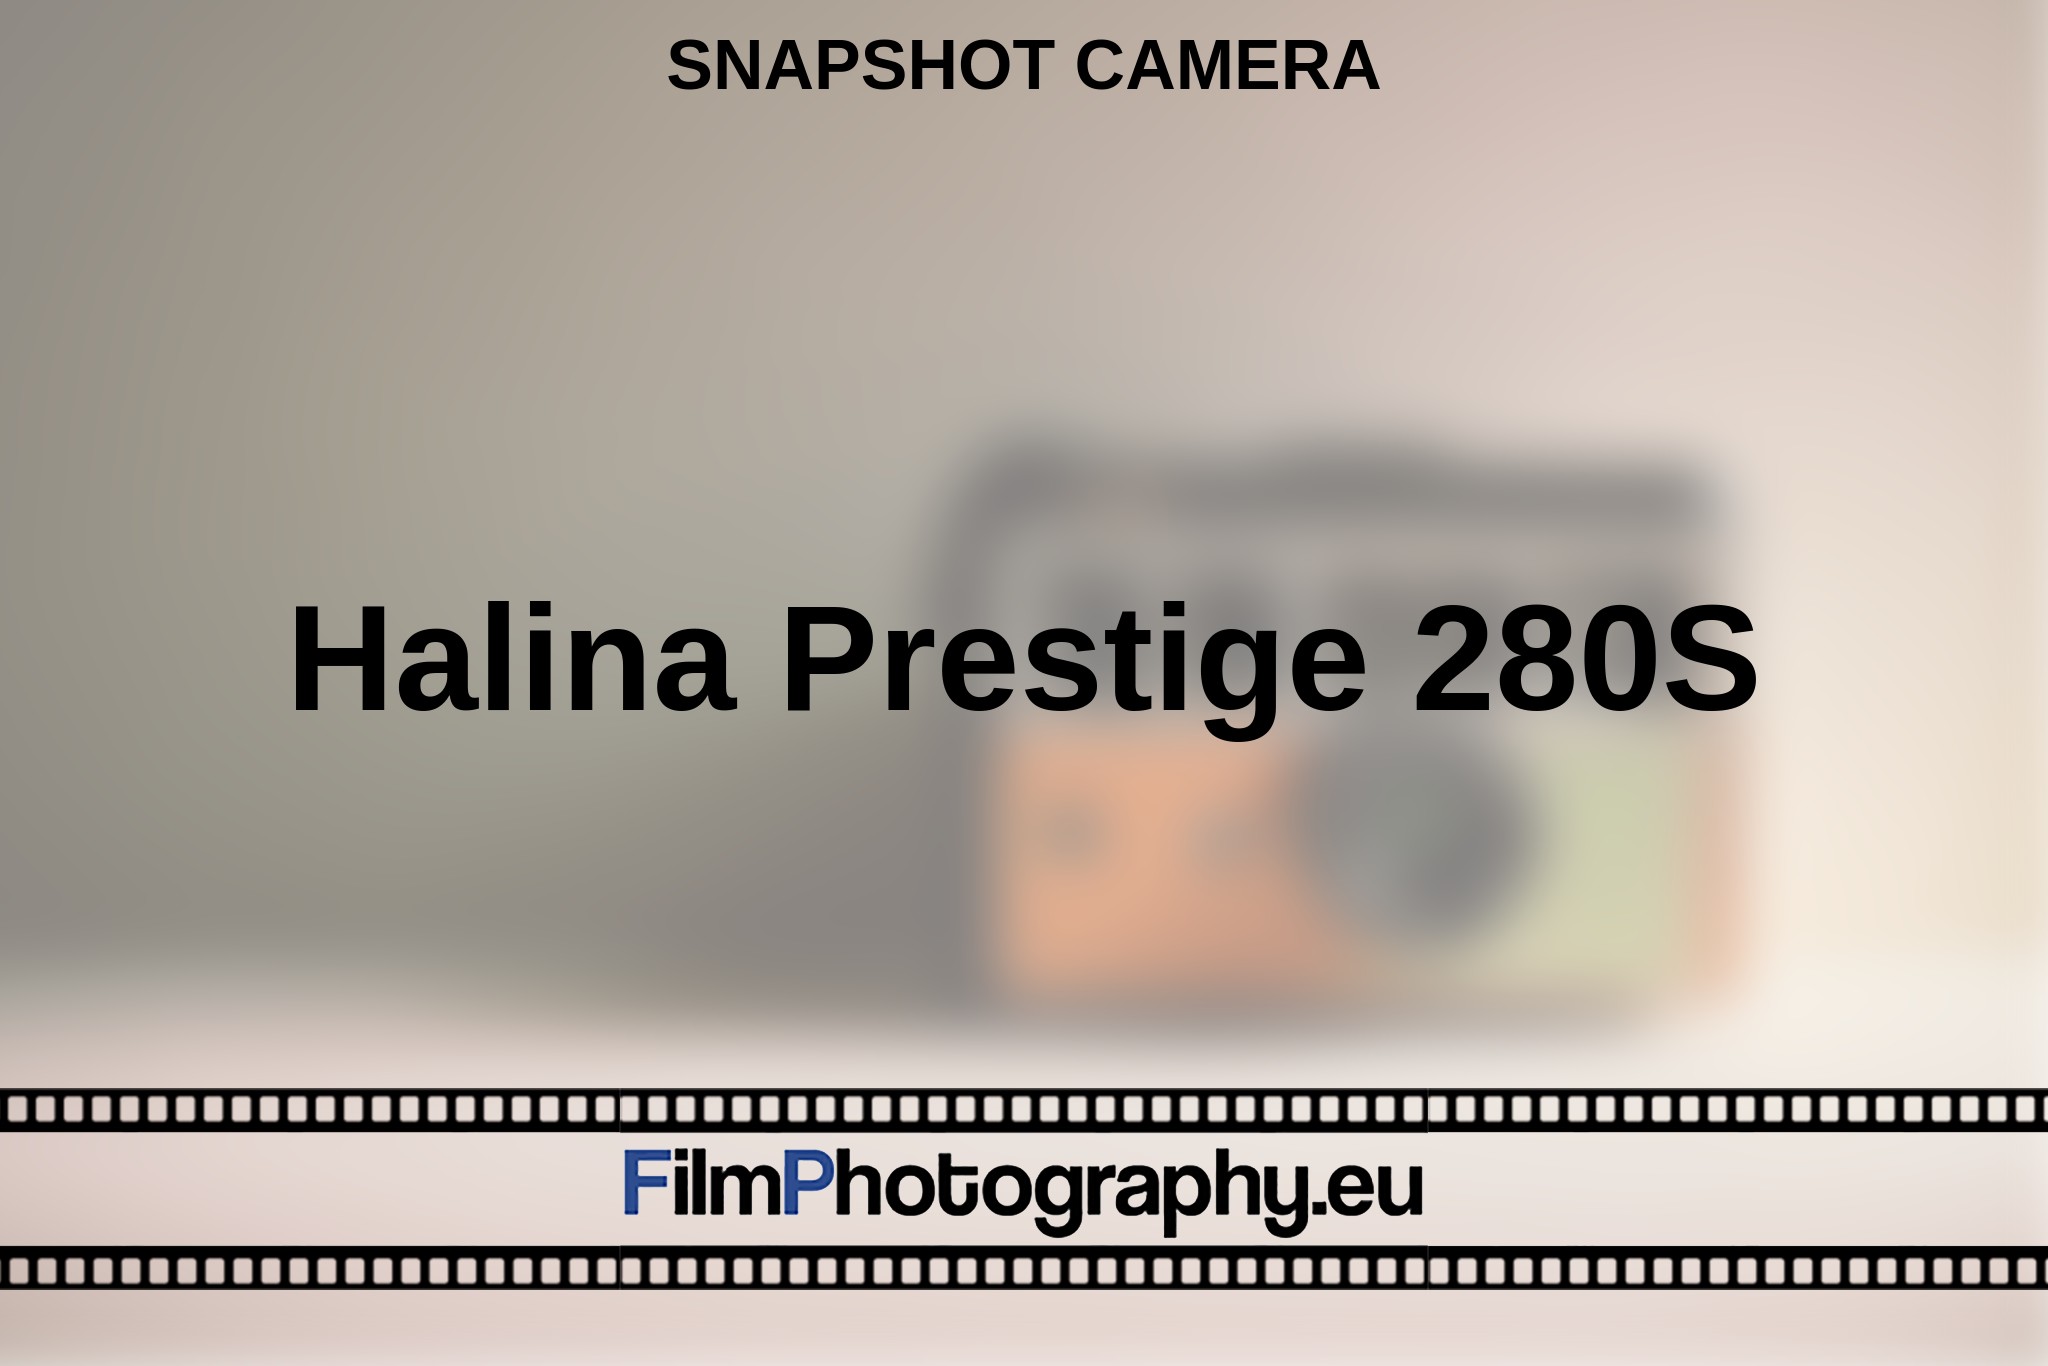 halina-prestige-280s-snapshot-camera-en-bnv.jpg